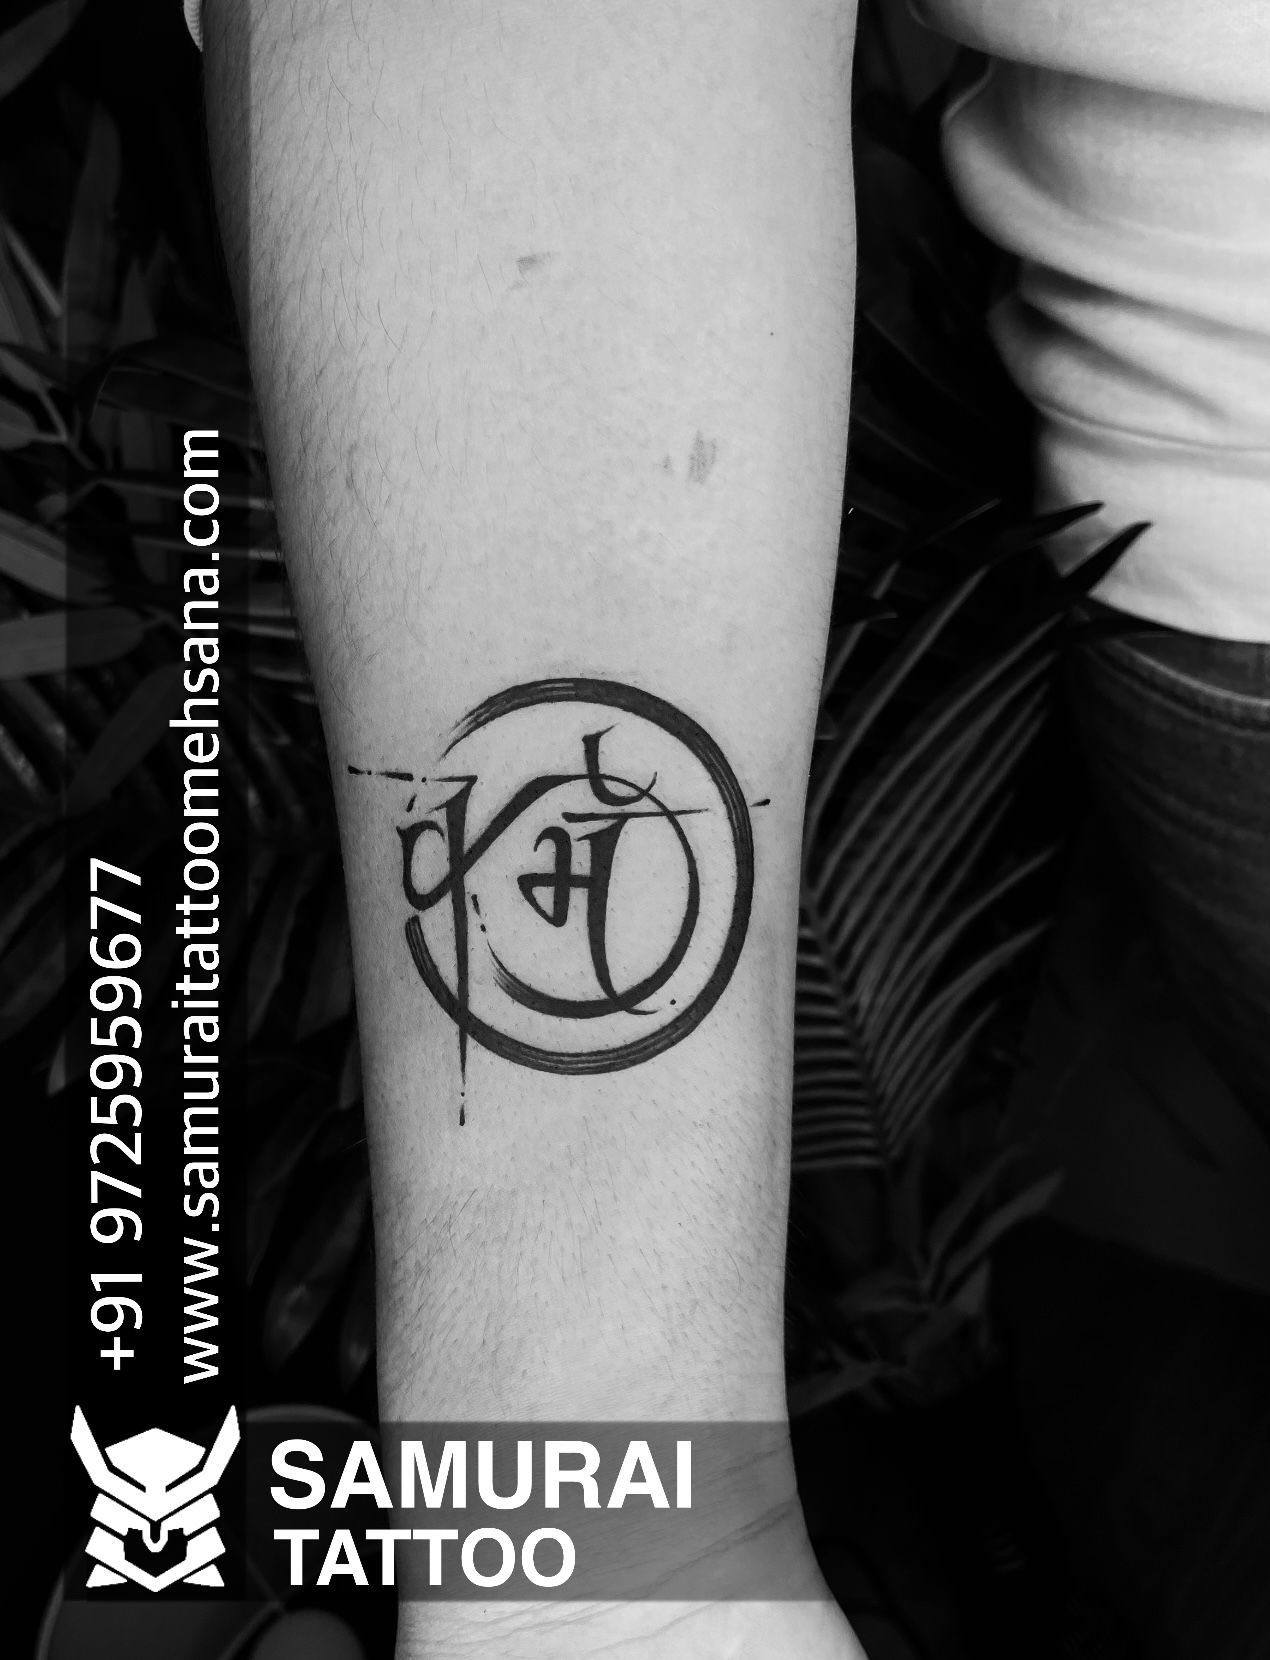 Permanent Unisex Karma Tattoo Rs 500square inch Inkblot Tattoo  Art  Studio  ID 23894754433